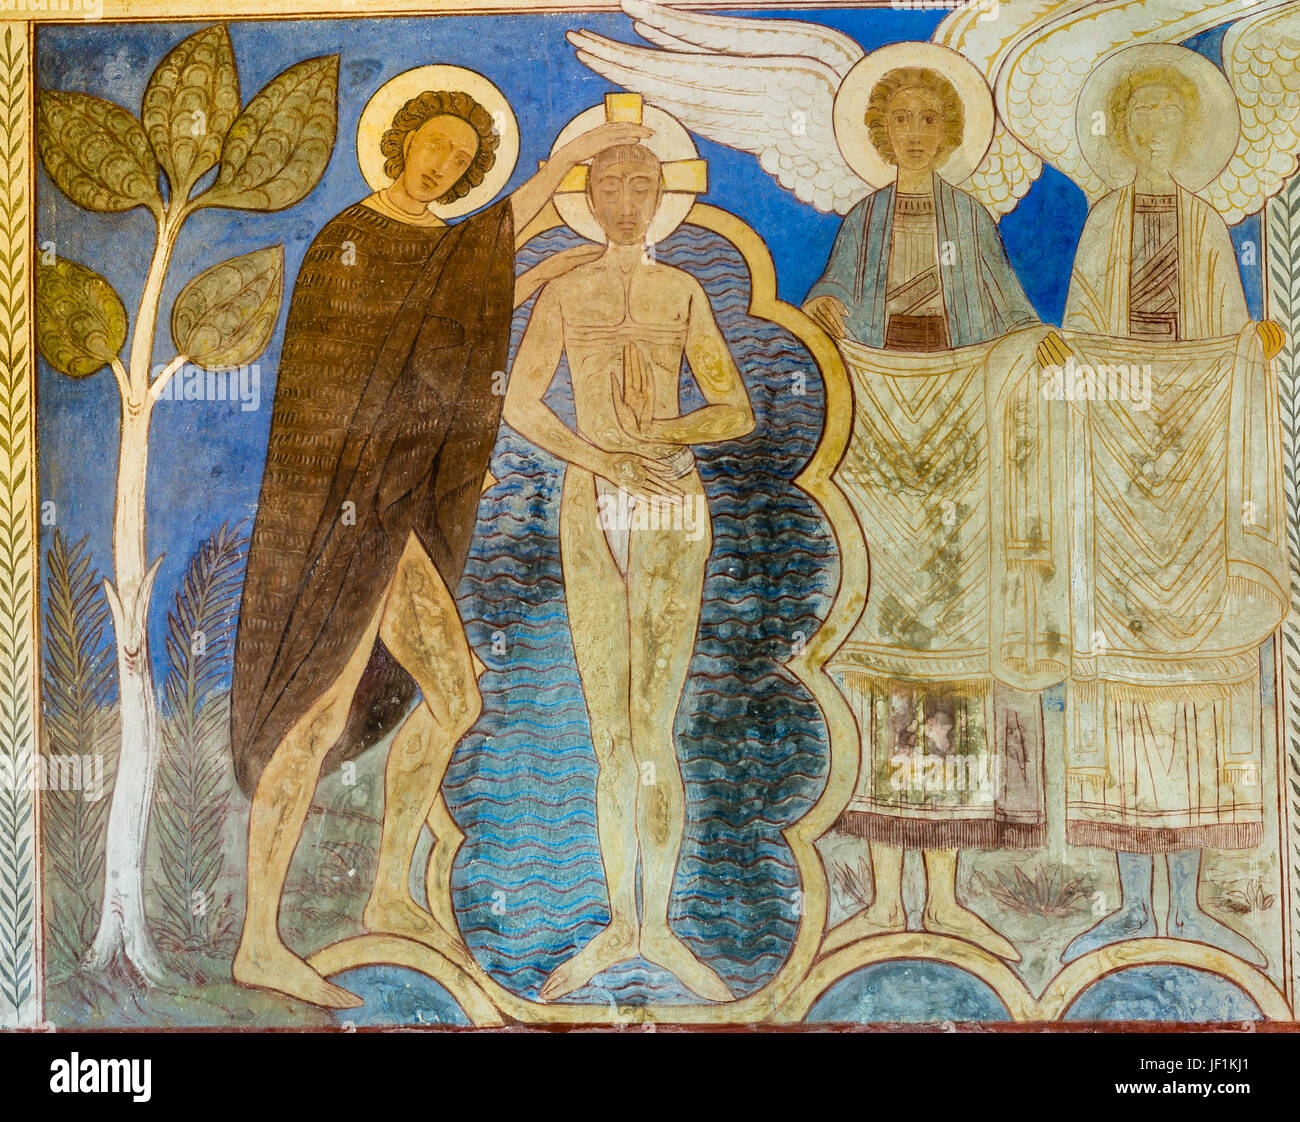 Baptism of Jesus in the Jordan river, romanescque fresco in Jelling church Denmark, June 26, 2017 Stock Photo